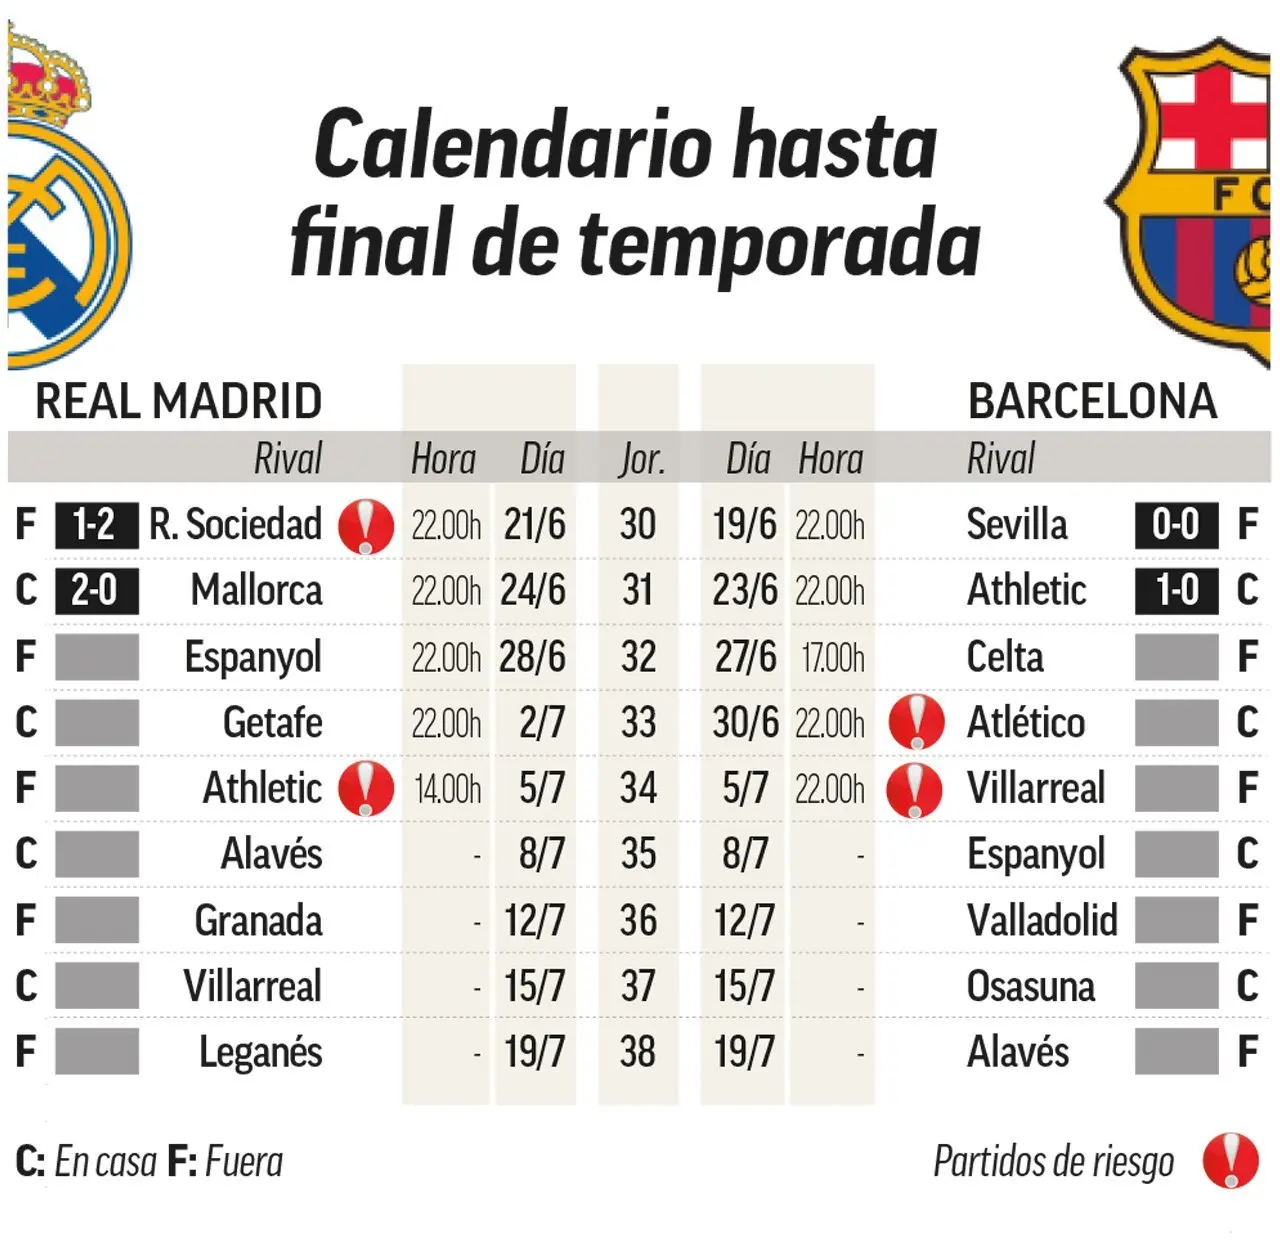 partidos jugados del real madrid - Quién a jugado más partidos con el Real Madrid